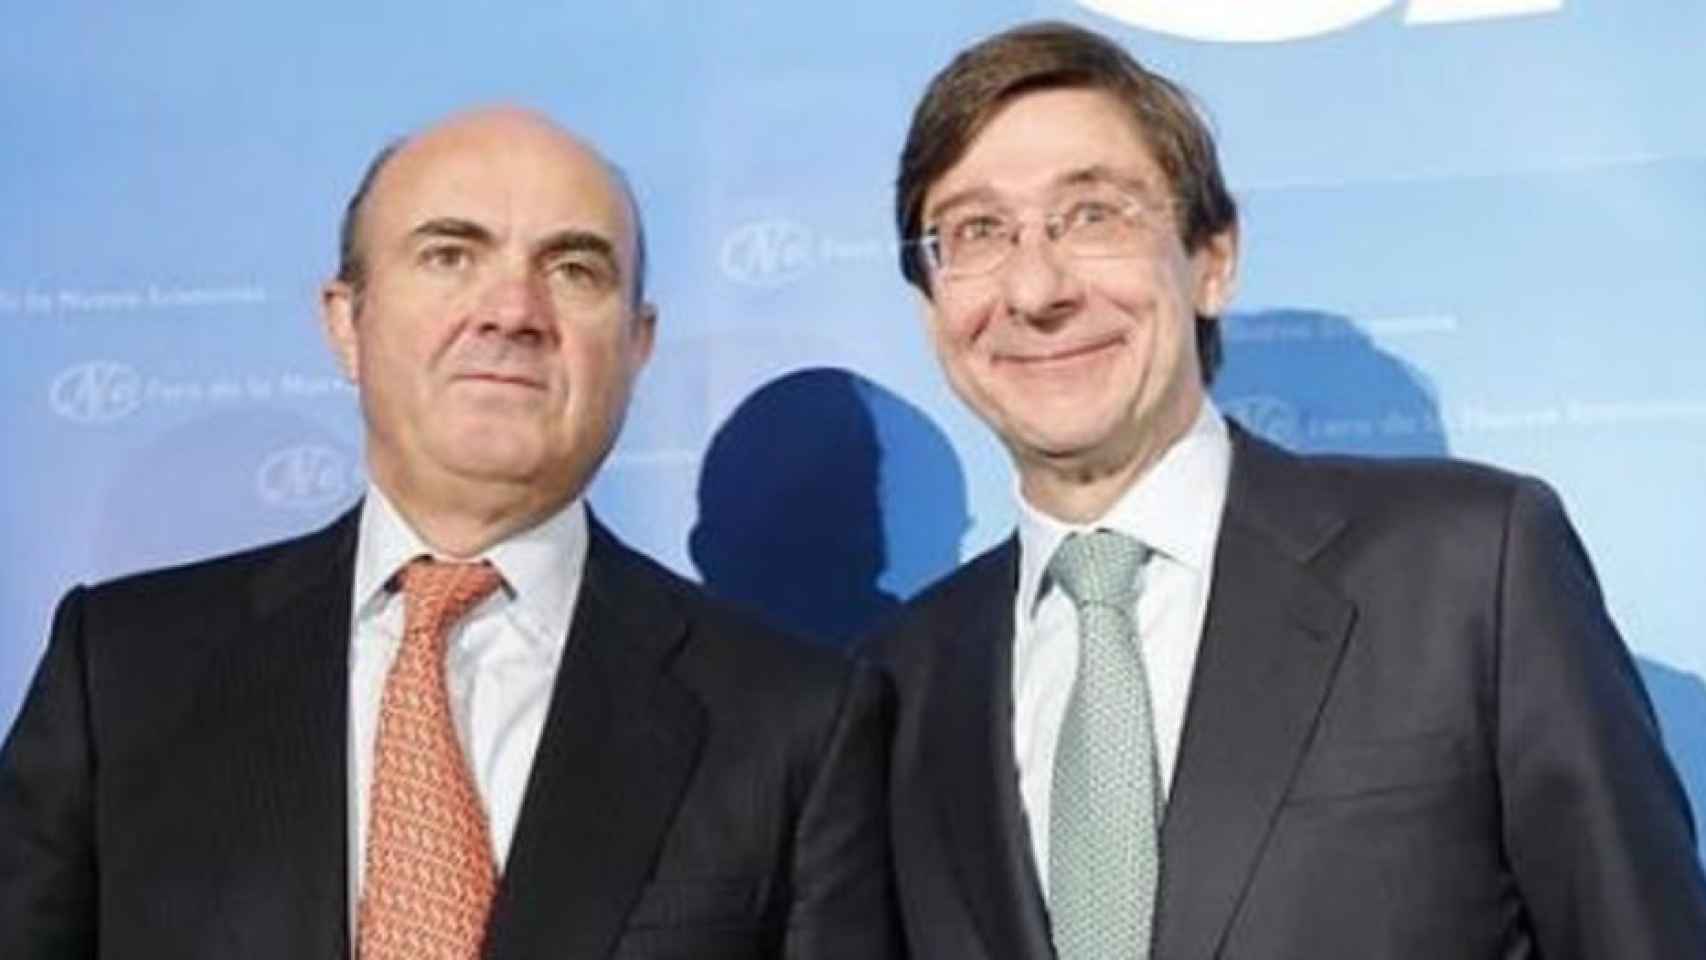 Guindos, Goirigolzarri, González y Acebes, testigos de la Fiscalía en caso Bankia